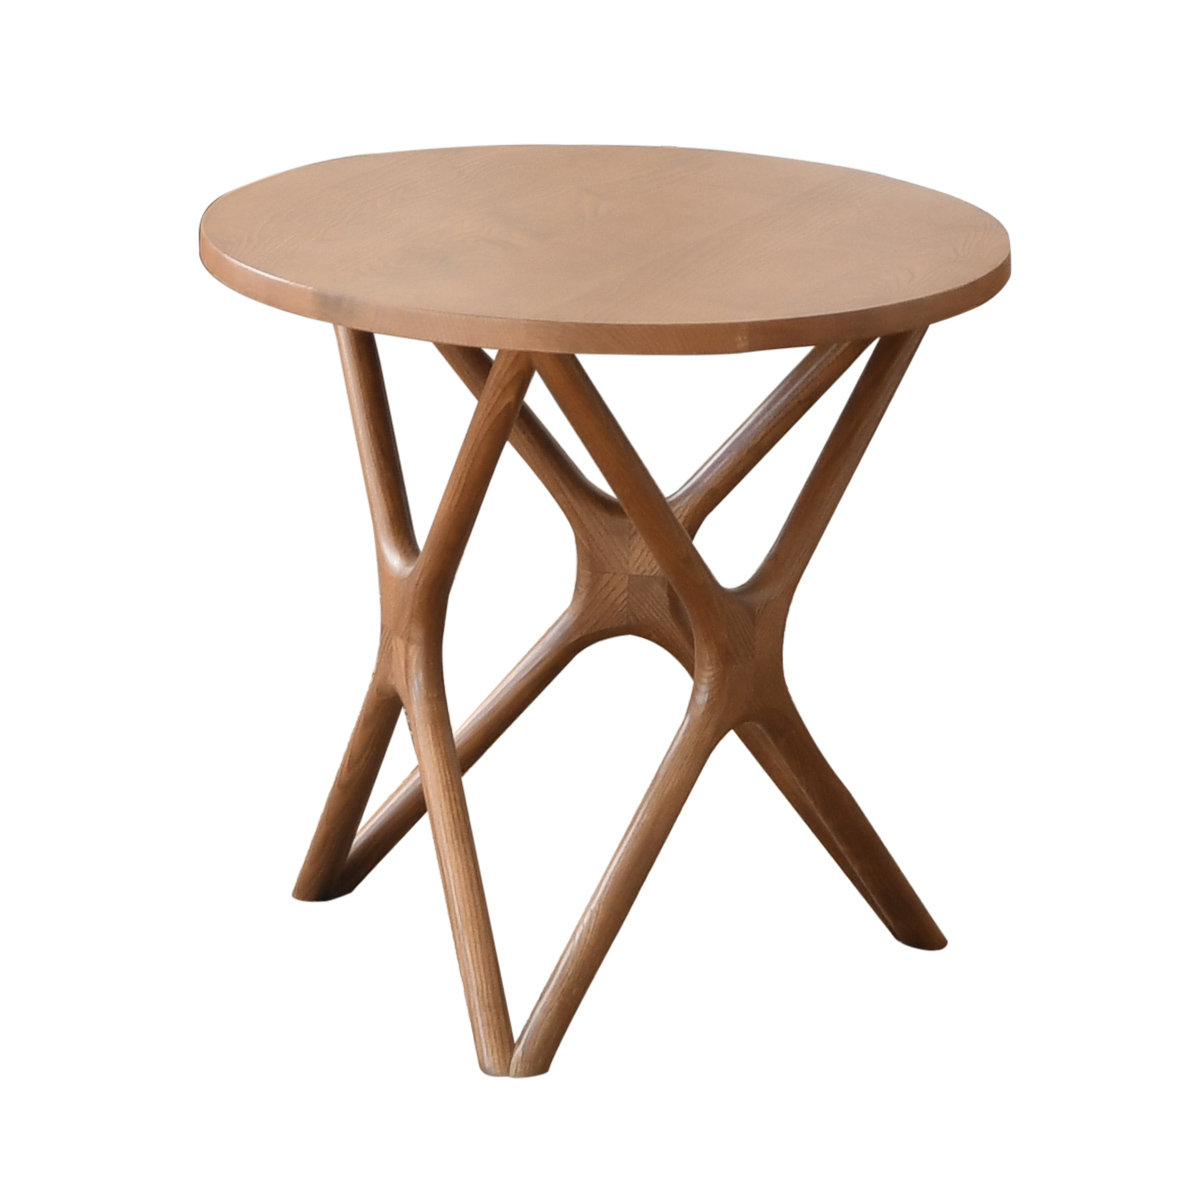 丸テーブル 幅60cm 2人用 ダイニングテーブル 丸型テーブル 円形